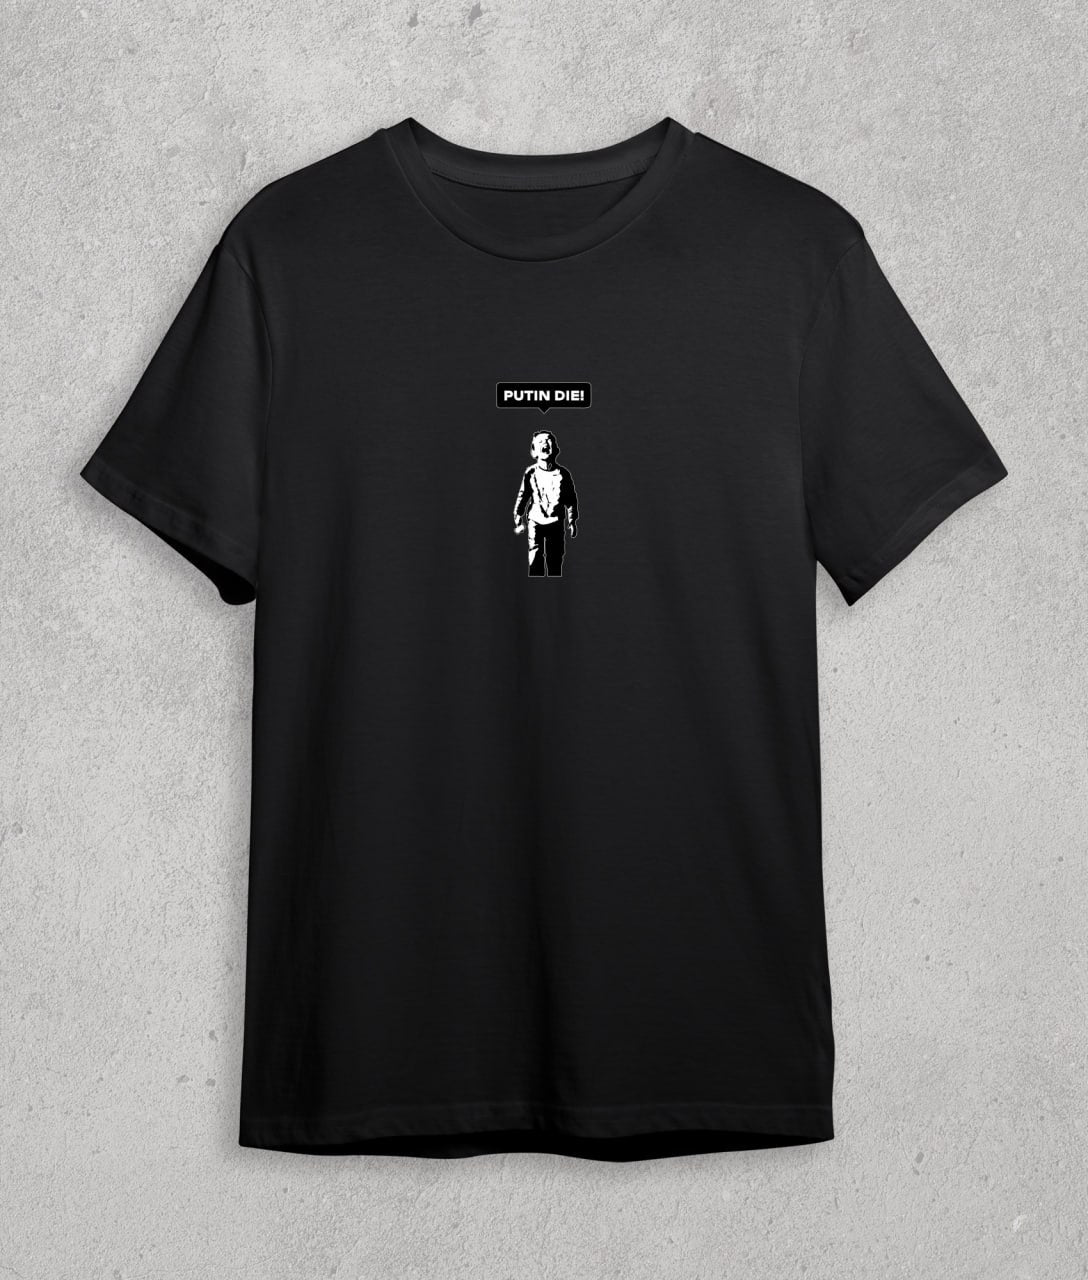 T-shirt "putin die" (Banksy)